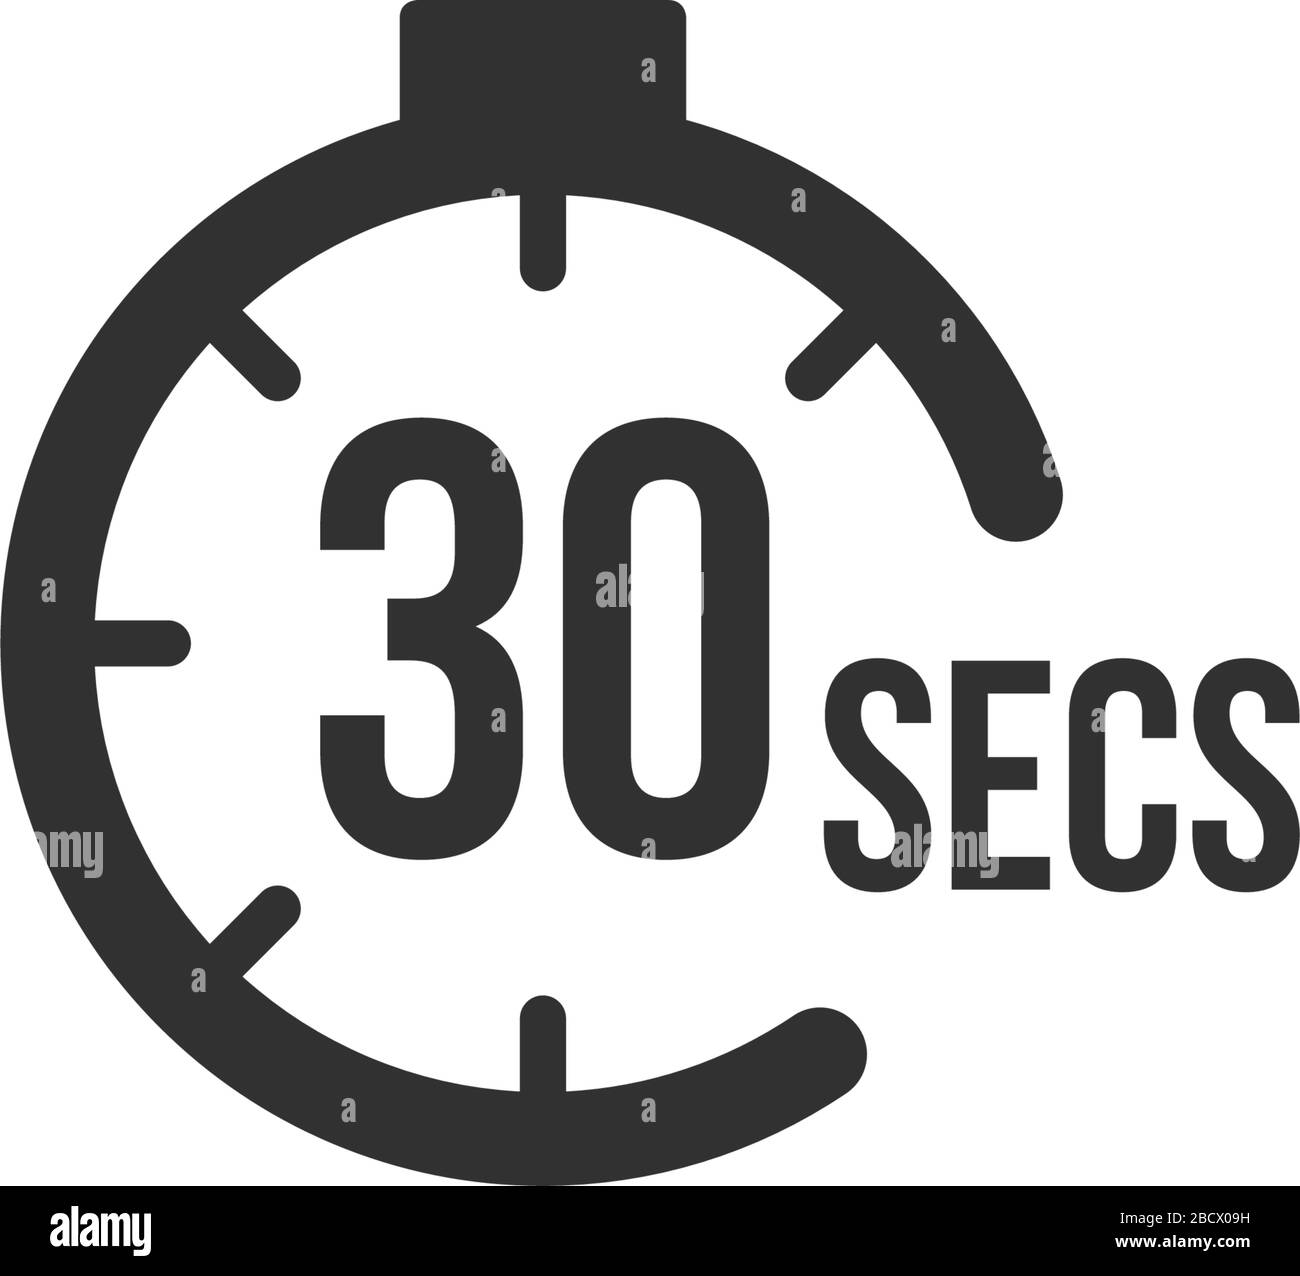 30 Sekunden Countdown-Timer-Symbol eingestellt. Zeitintervall-Symbole.  Stoppuhr und Zeitmessung. Darstellung des Vektors isoliert  Stock-Vektorgrafik - Alamy